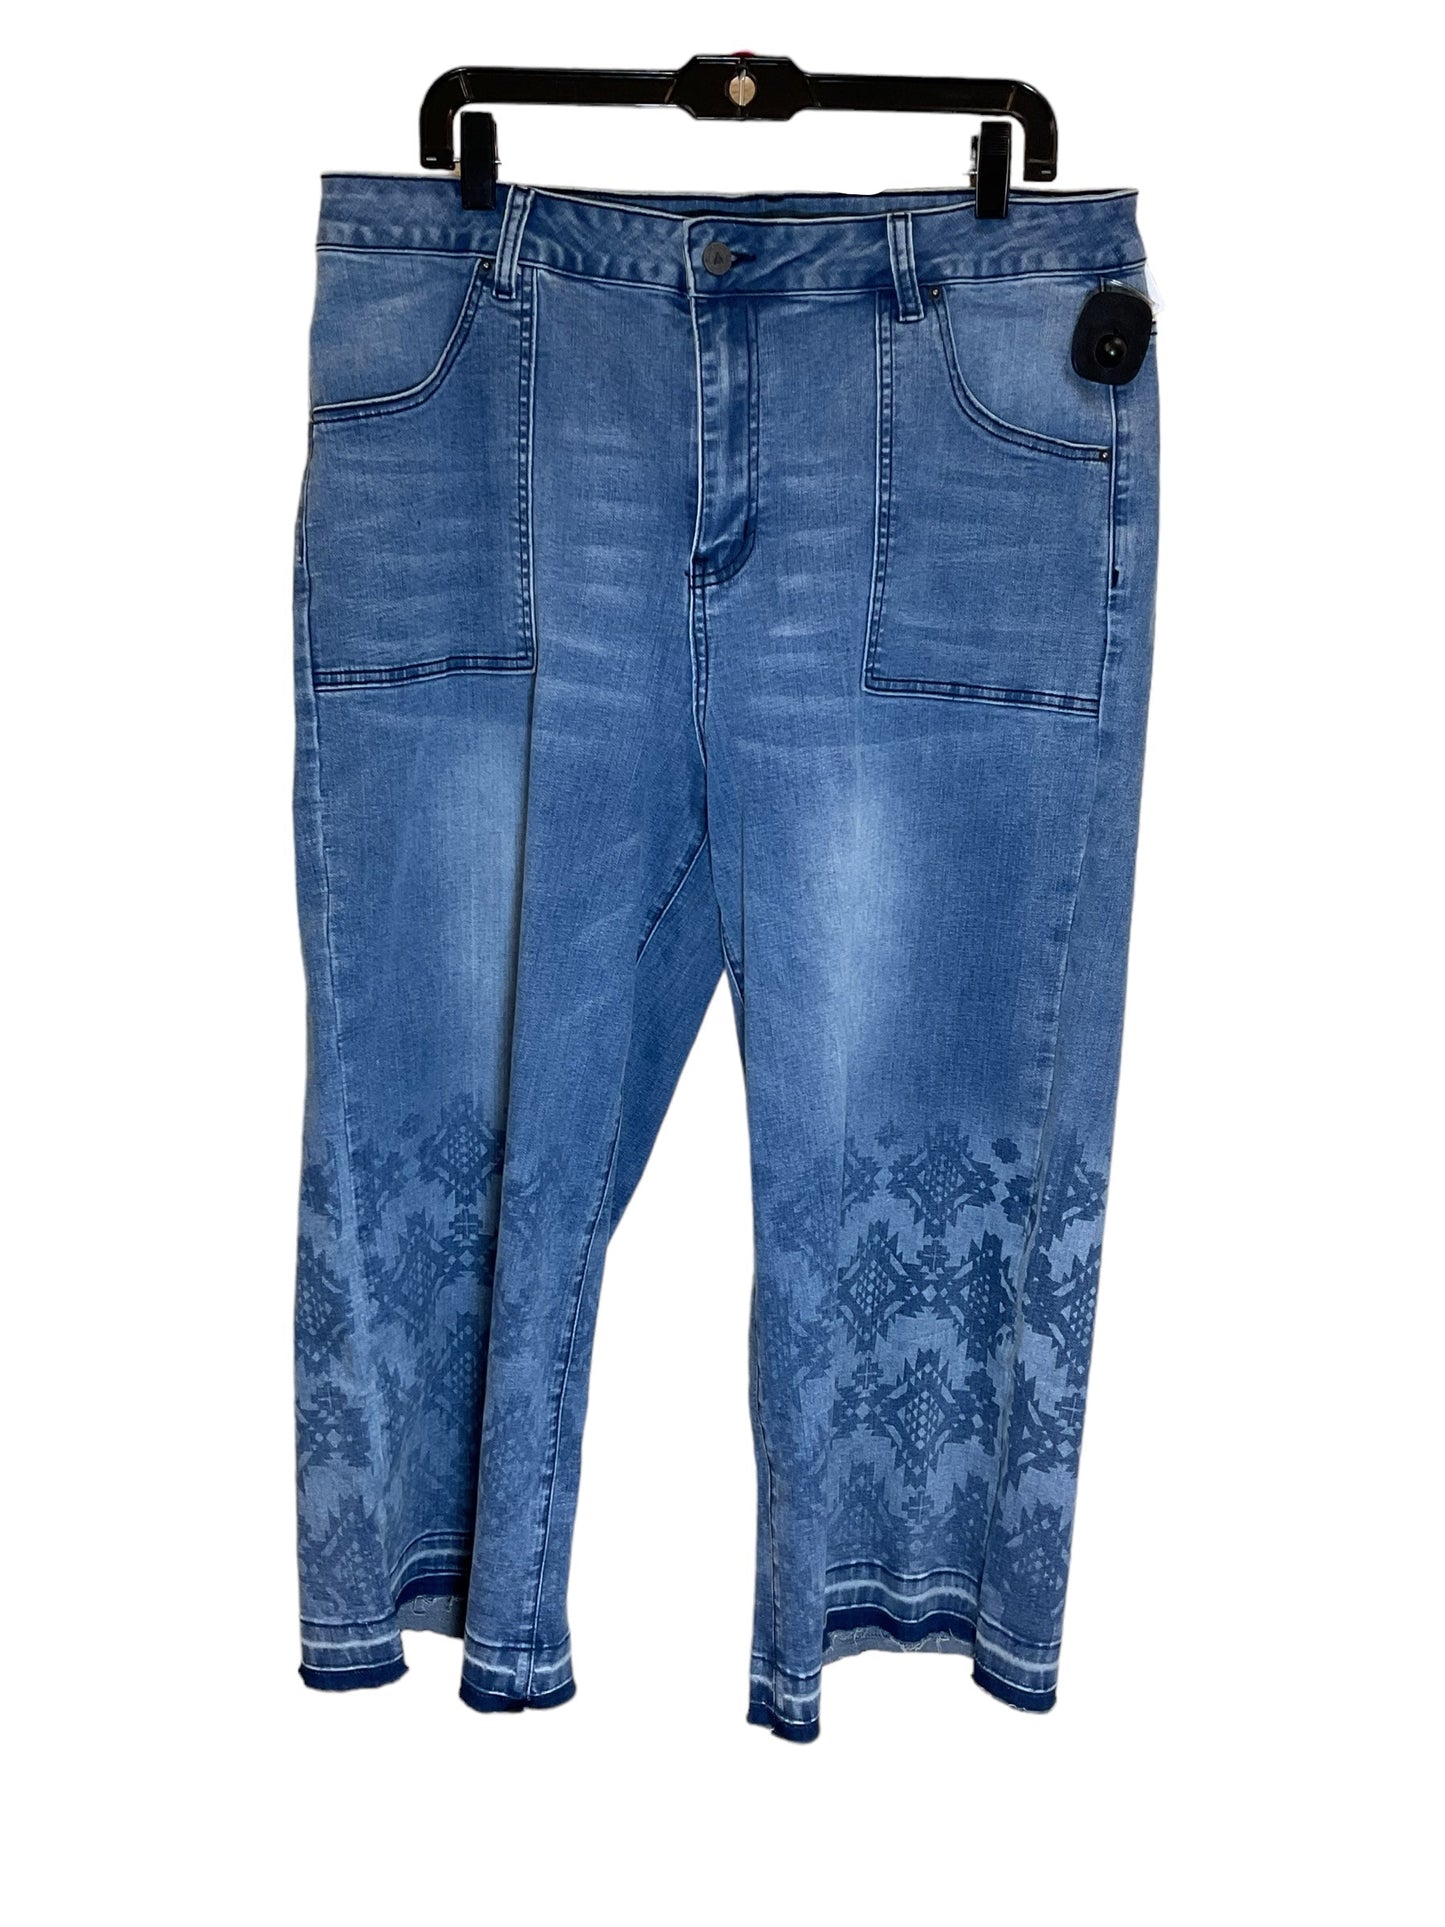 Blue Denim Jeans Wide Leg Clothes Mentor, Size 3x